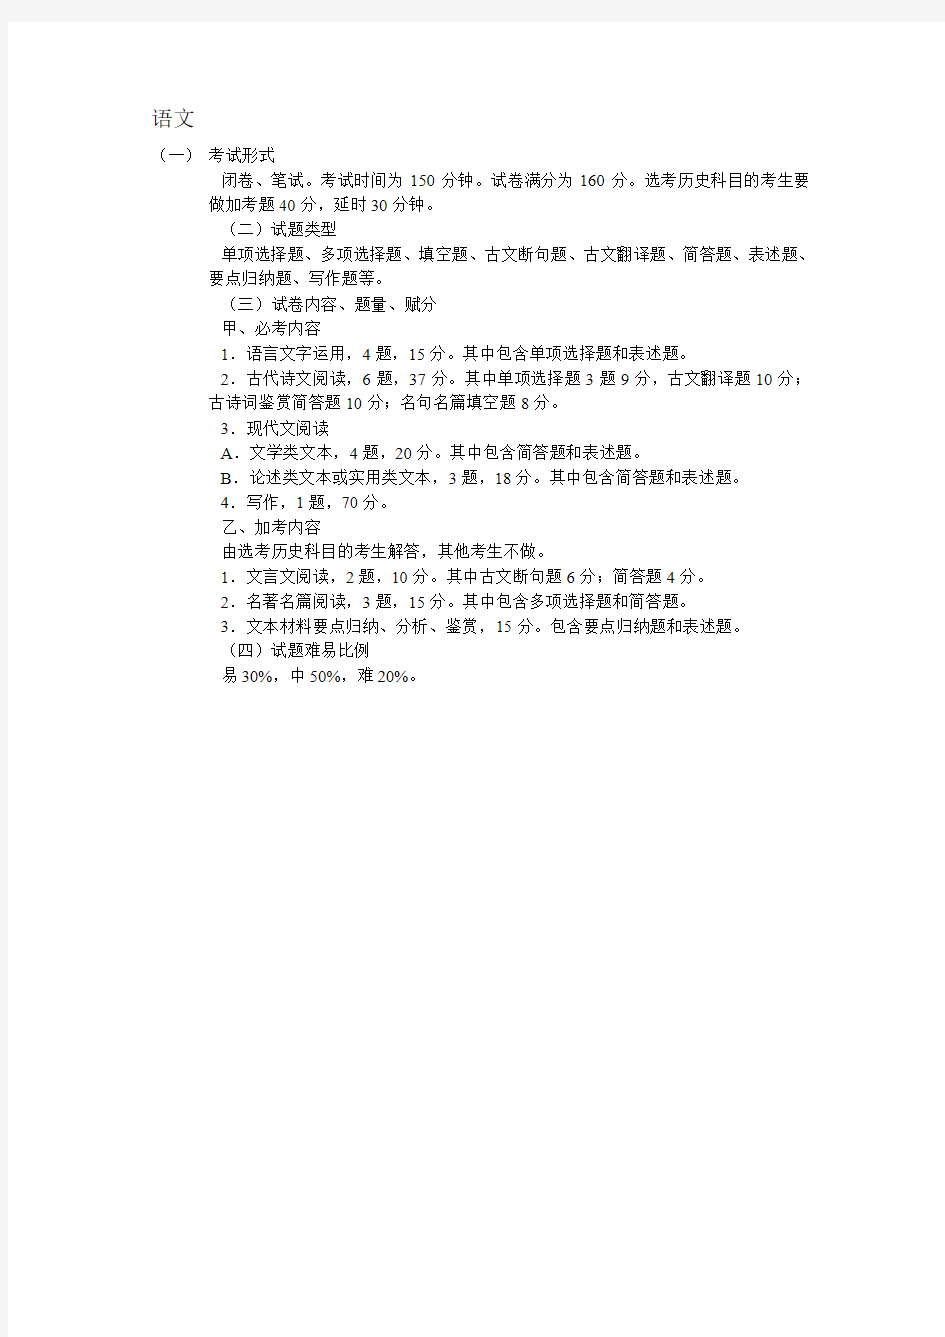 高考考试形式及试卷结构(江苏版)